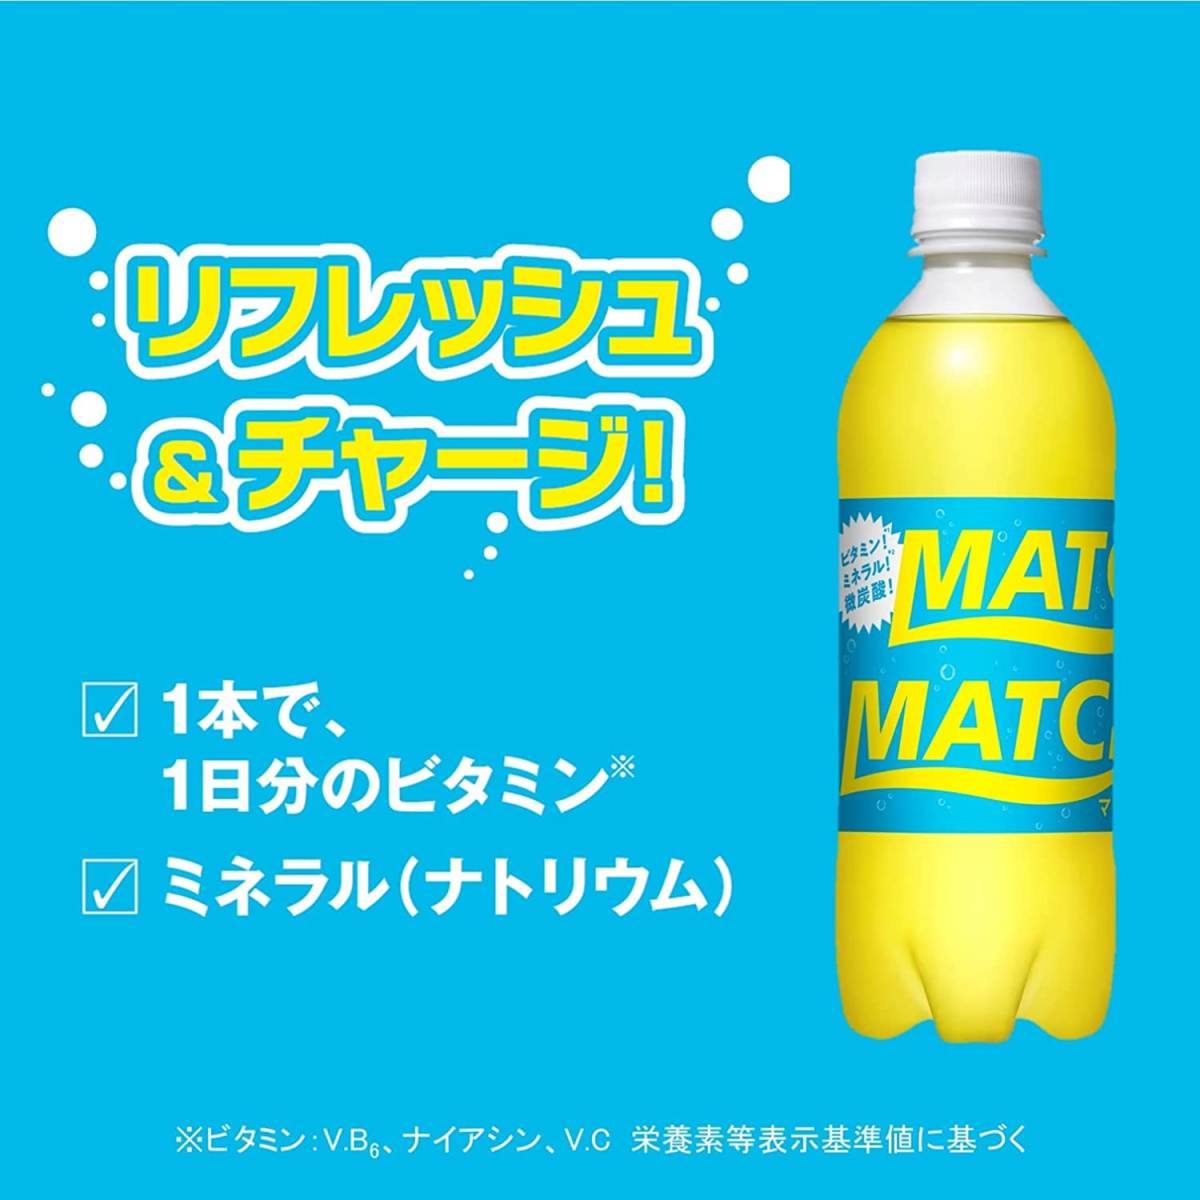 MATCH マッチ ペットボトル 500ml ×24本 大塚食品 ビタミン ミネラル 微炭酸 ケース セット_画像2